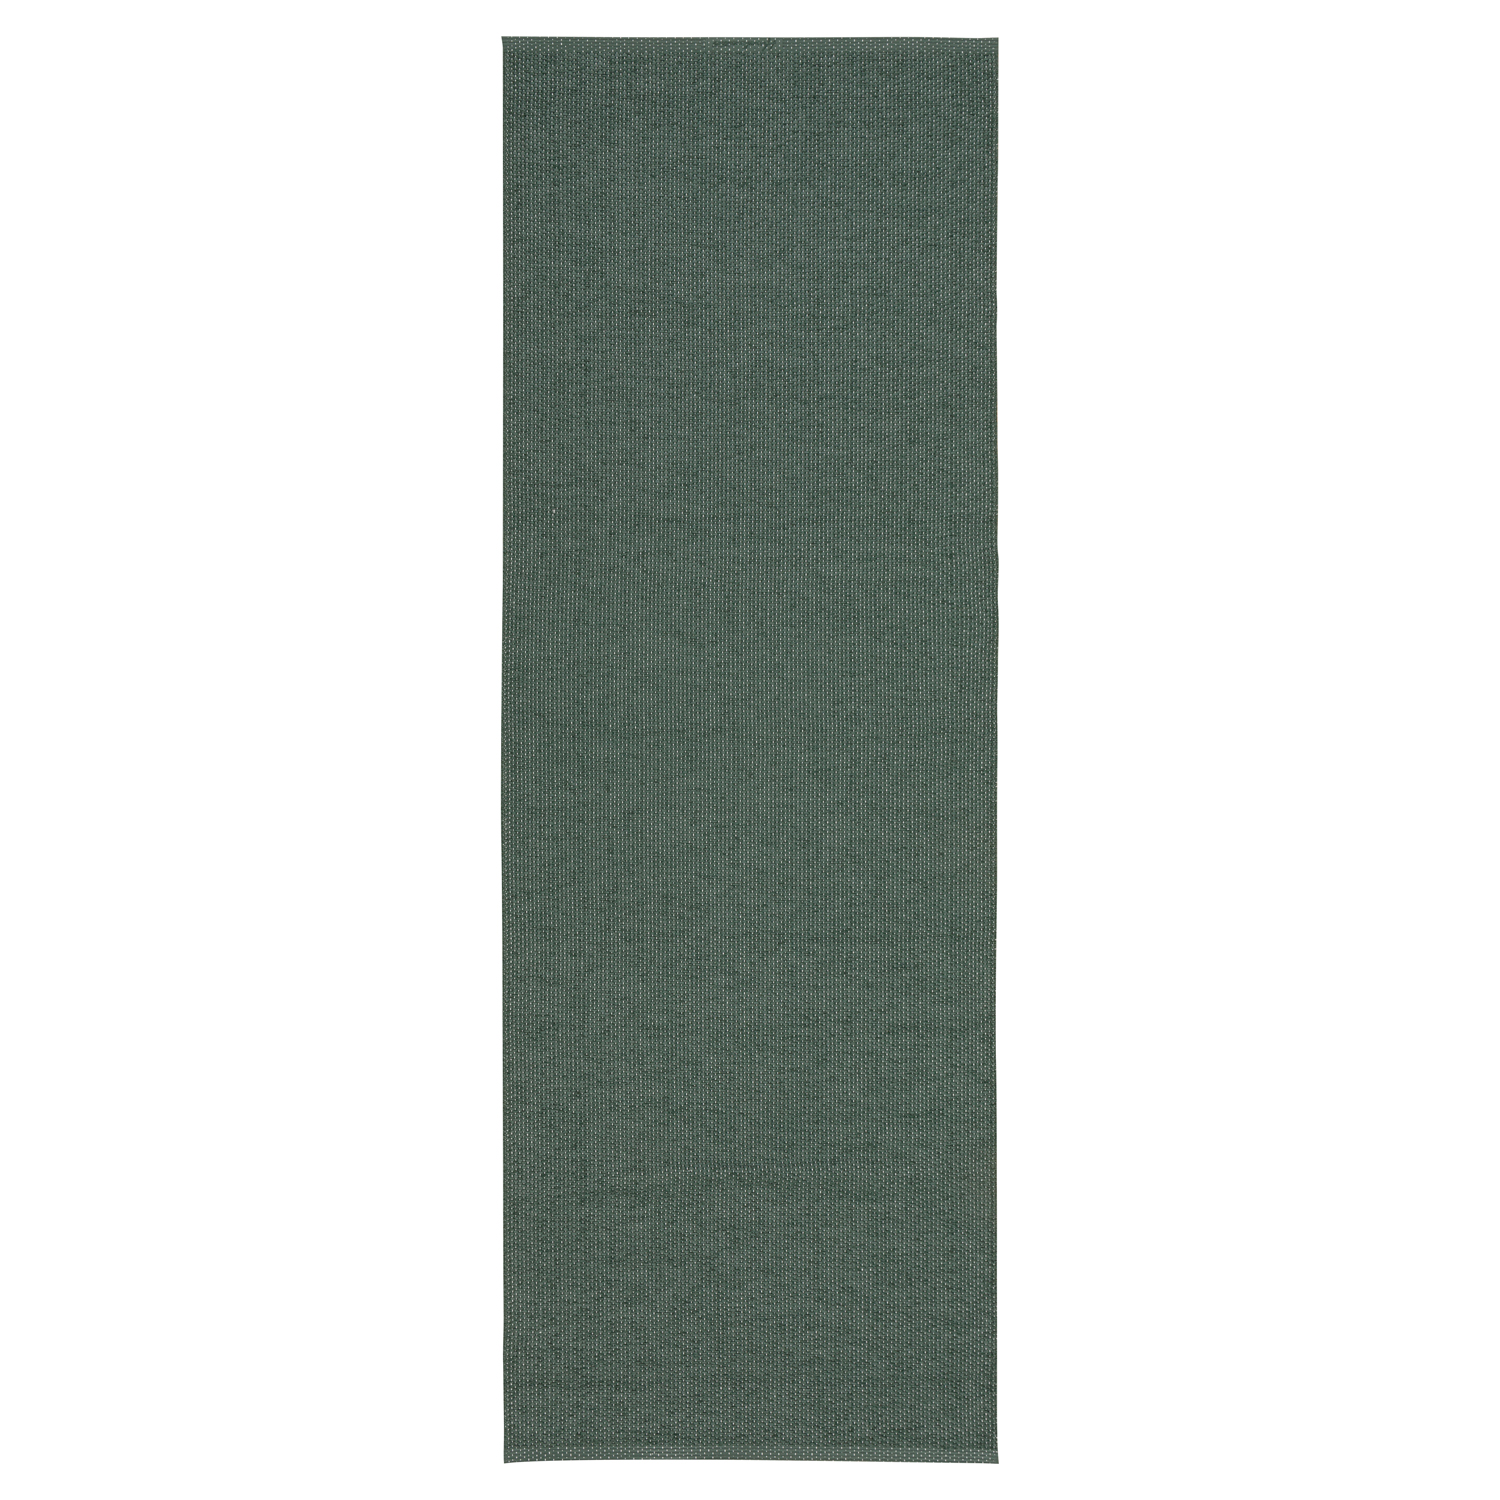 Horredsmattan Teppich Solo Darkgreen für Innen und Aussen Made in Sweden since 1956 UV-Beständig